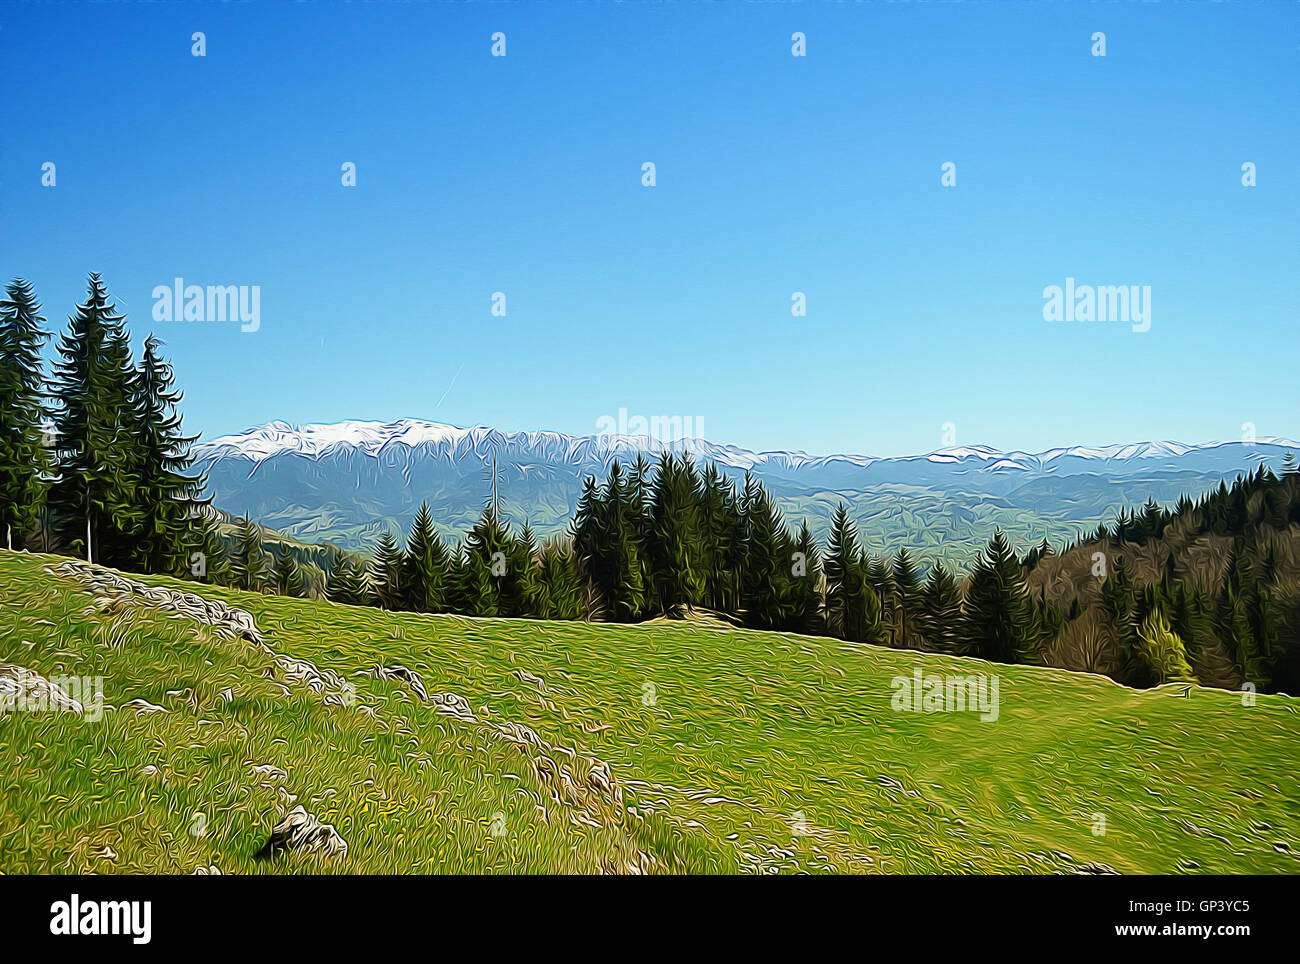 Illustration von Spring Mountain mit Tannenwald am Hang. Schöne Landschaft mit weißen Spitzen auf weit und ein grünes Feld Stockfoto